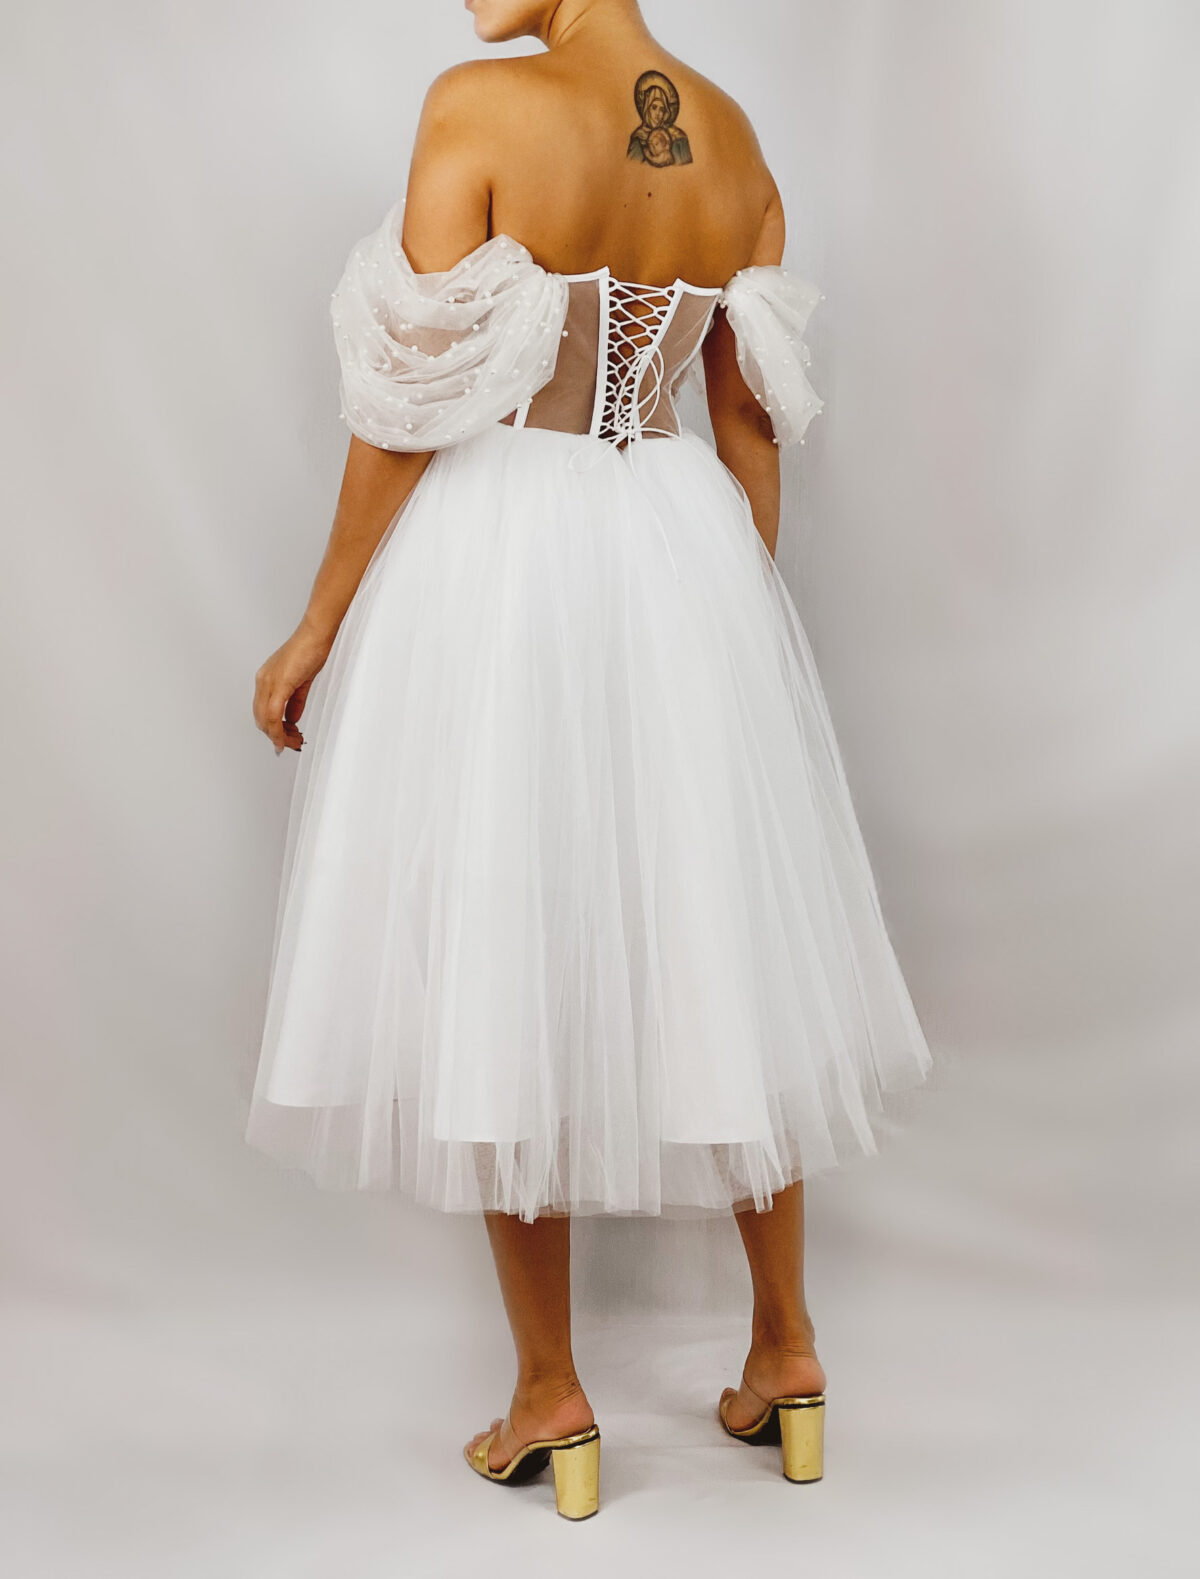 154617CD D376 4BD7 8CBE D5043D016EB4 HOBRAT white bridal dress